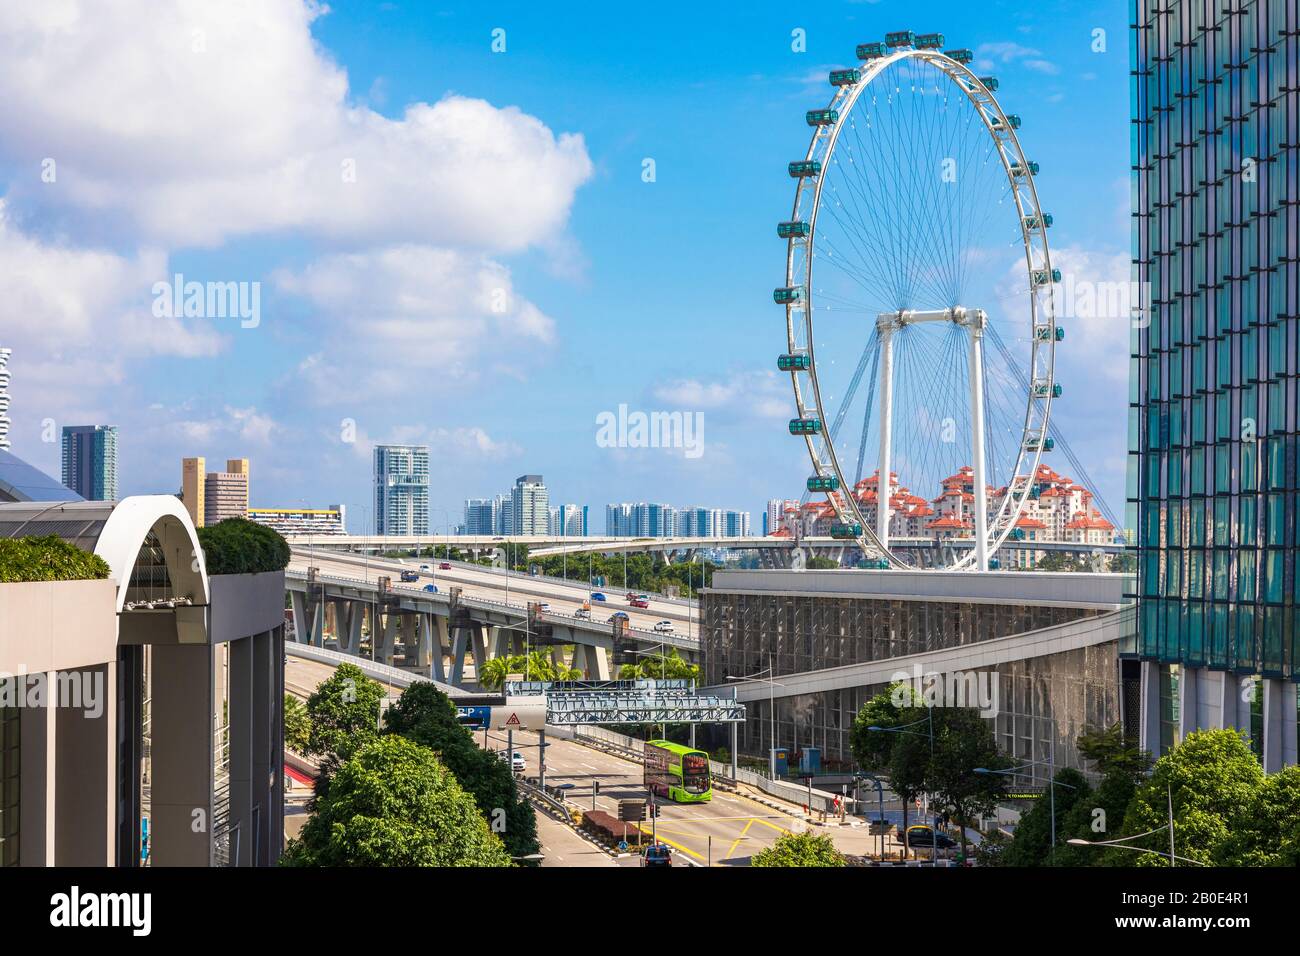 Skyline di Singapore nel quartiere della baia marina che mostra autostrade, strade con traffico e Singapore Flyer, Asia Foto Stock